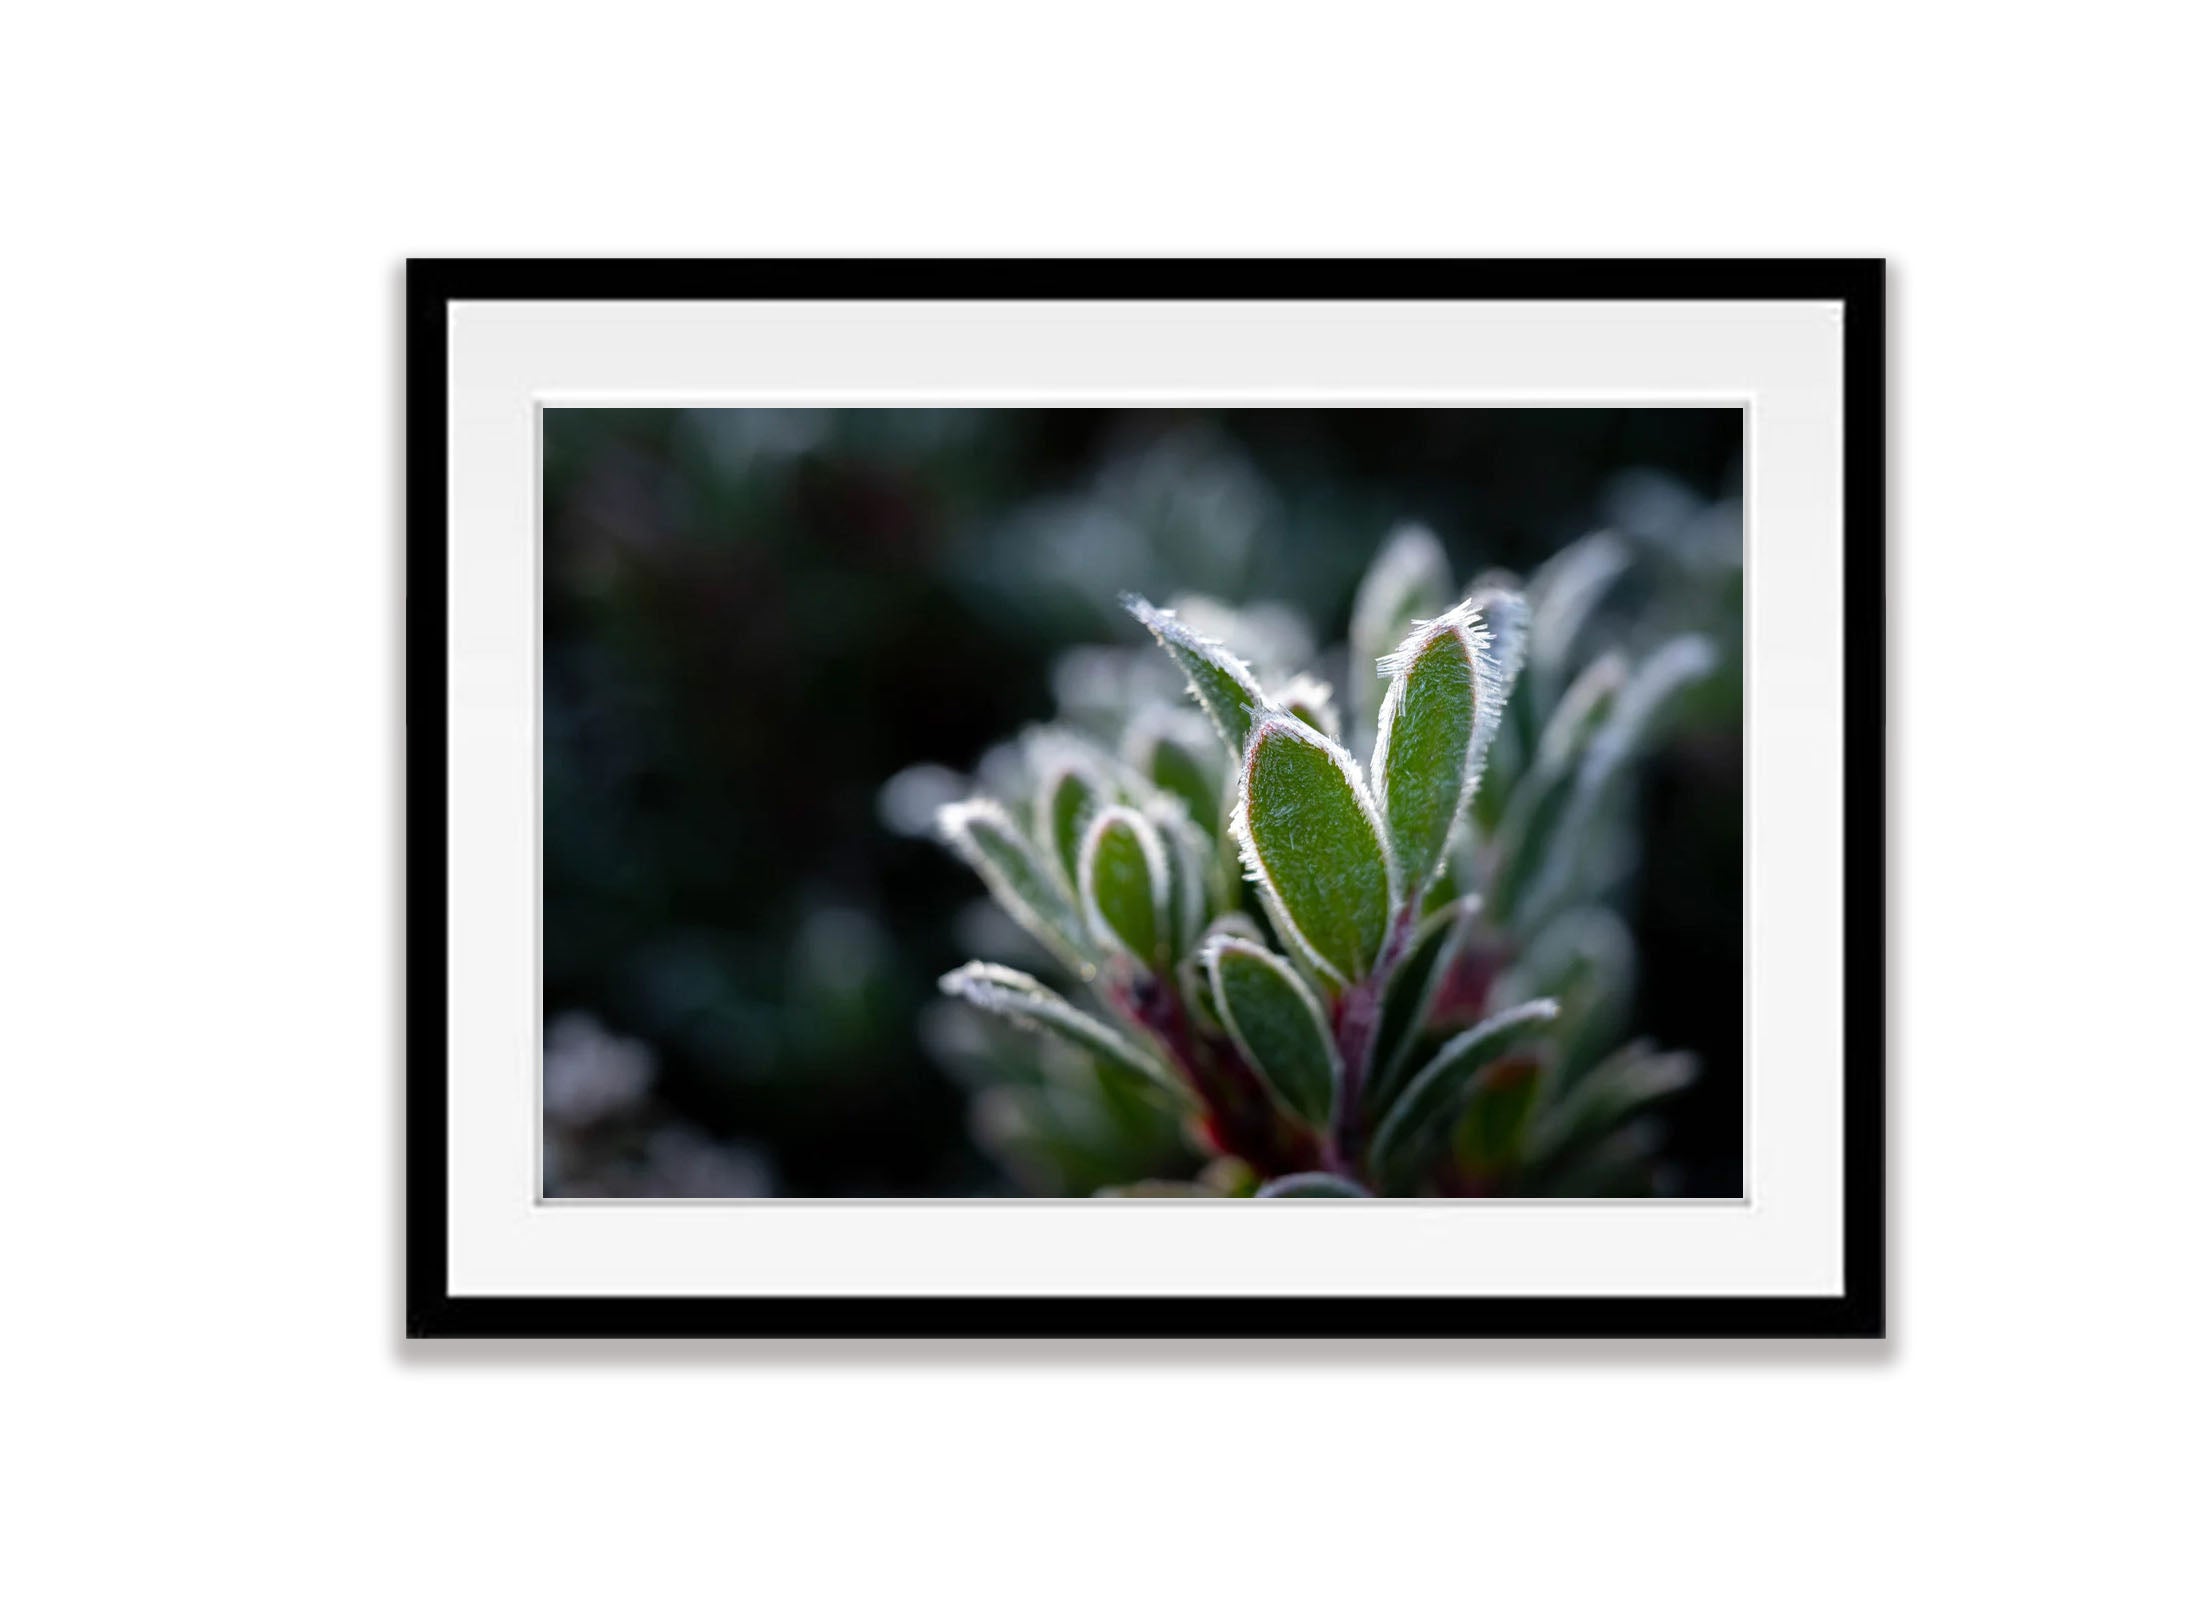 Frozen Plant detail, Cradle Mountain, Tasmania